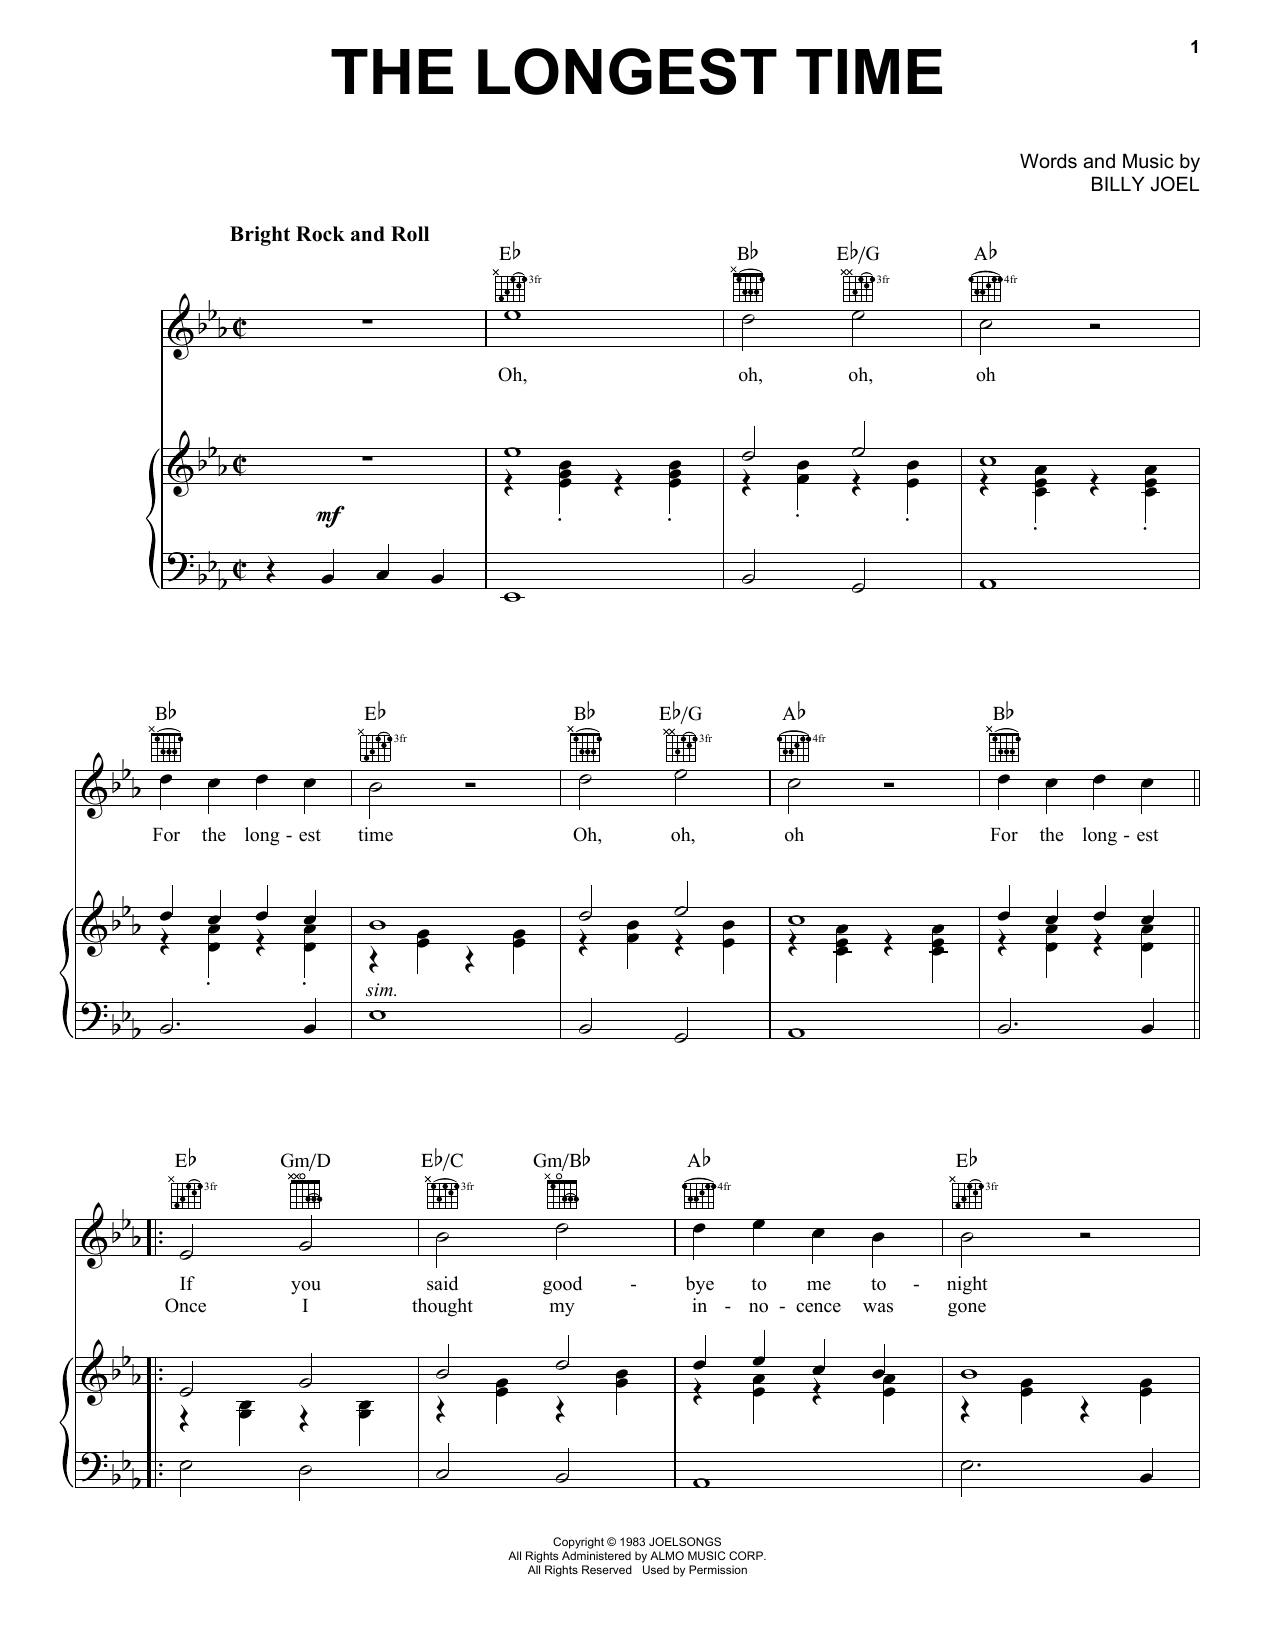 Billy Joel "The Longest Time" Sheet PDF Notes, Chords | Rock Score Guitar Chords/Lyrics Download Printable. SKU: 79575